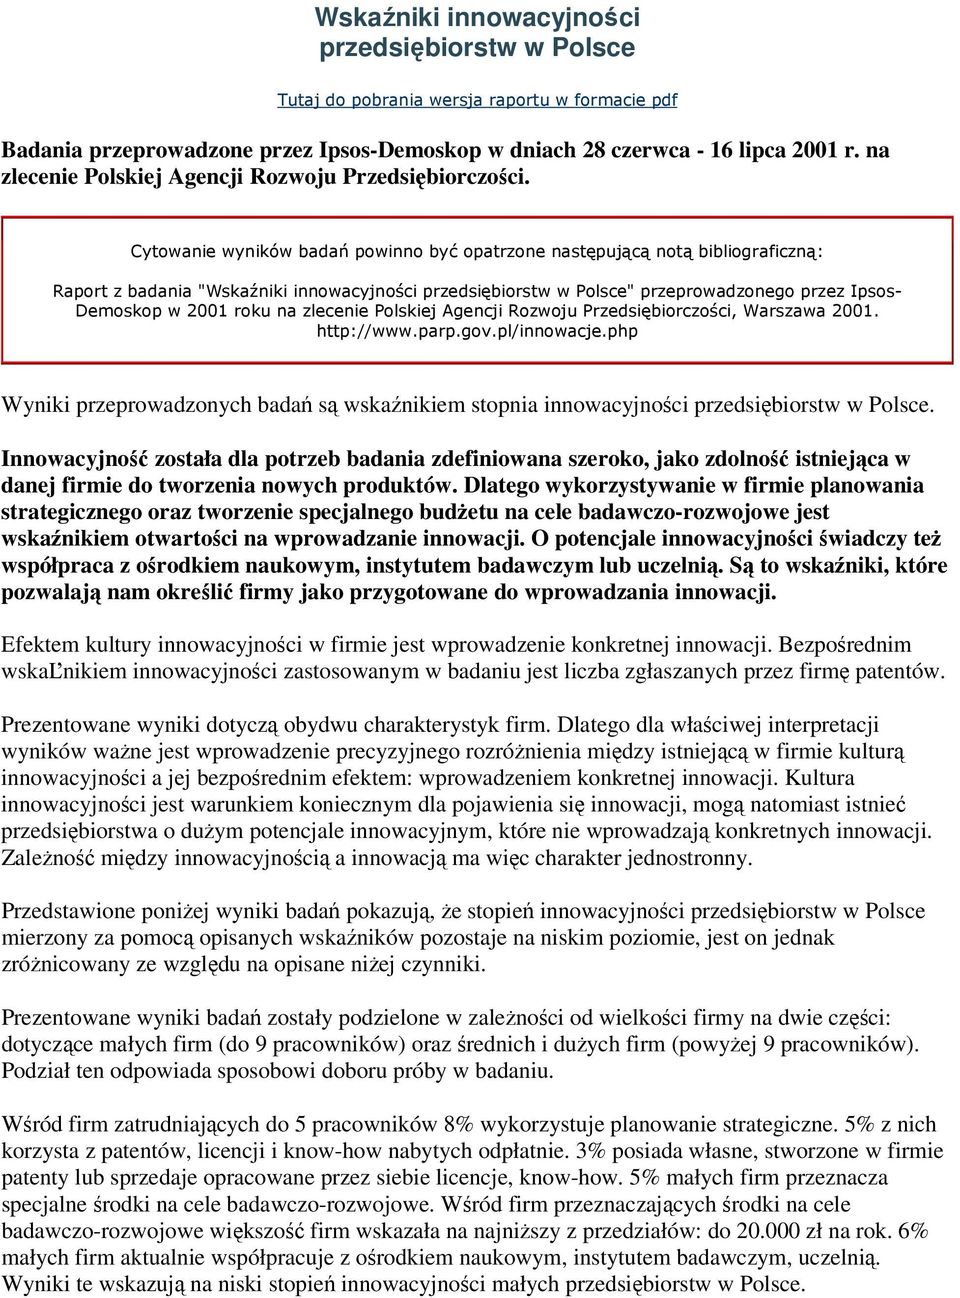 Cytowanie wyników badań powinno być opatrzone następującą notą bibliograficzną: Raport z badania "Wskaźniki innowacyjności przedsiębiorstw w Polsce" przeprowadzonego przez Ipsos- Demoskop w 2001 roku